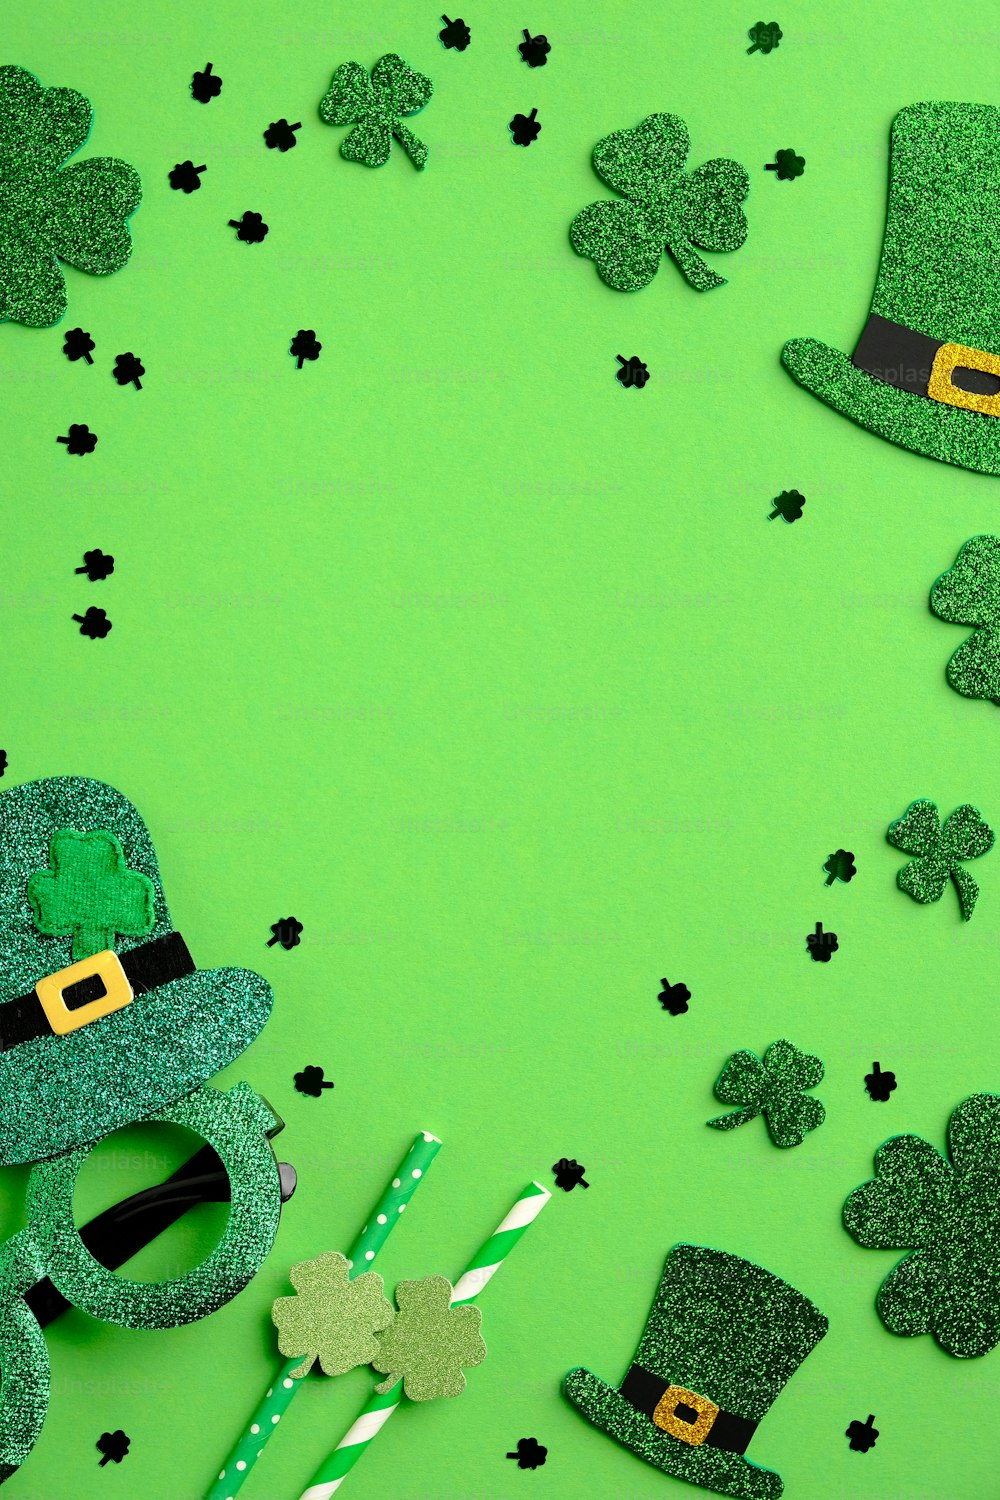 Diseño de pancarta vertical del Día de San Patricio con sombreros de elfo irlandés, tréboles de cuatro hojas de trébol, vasos del día de San Patricio, pajitas para beber, confeti sobre fondo verde. Plantilla de tarjeta de felicitación del Día de San Patricio.